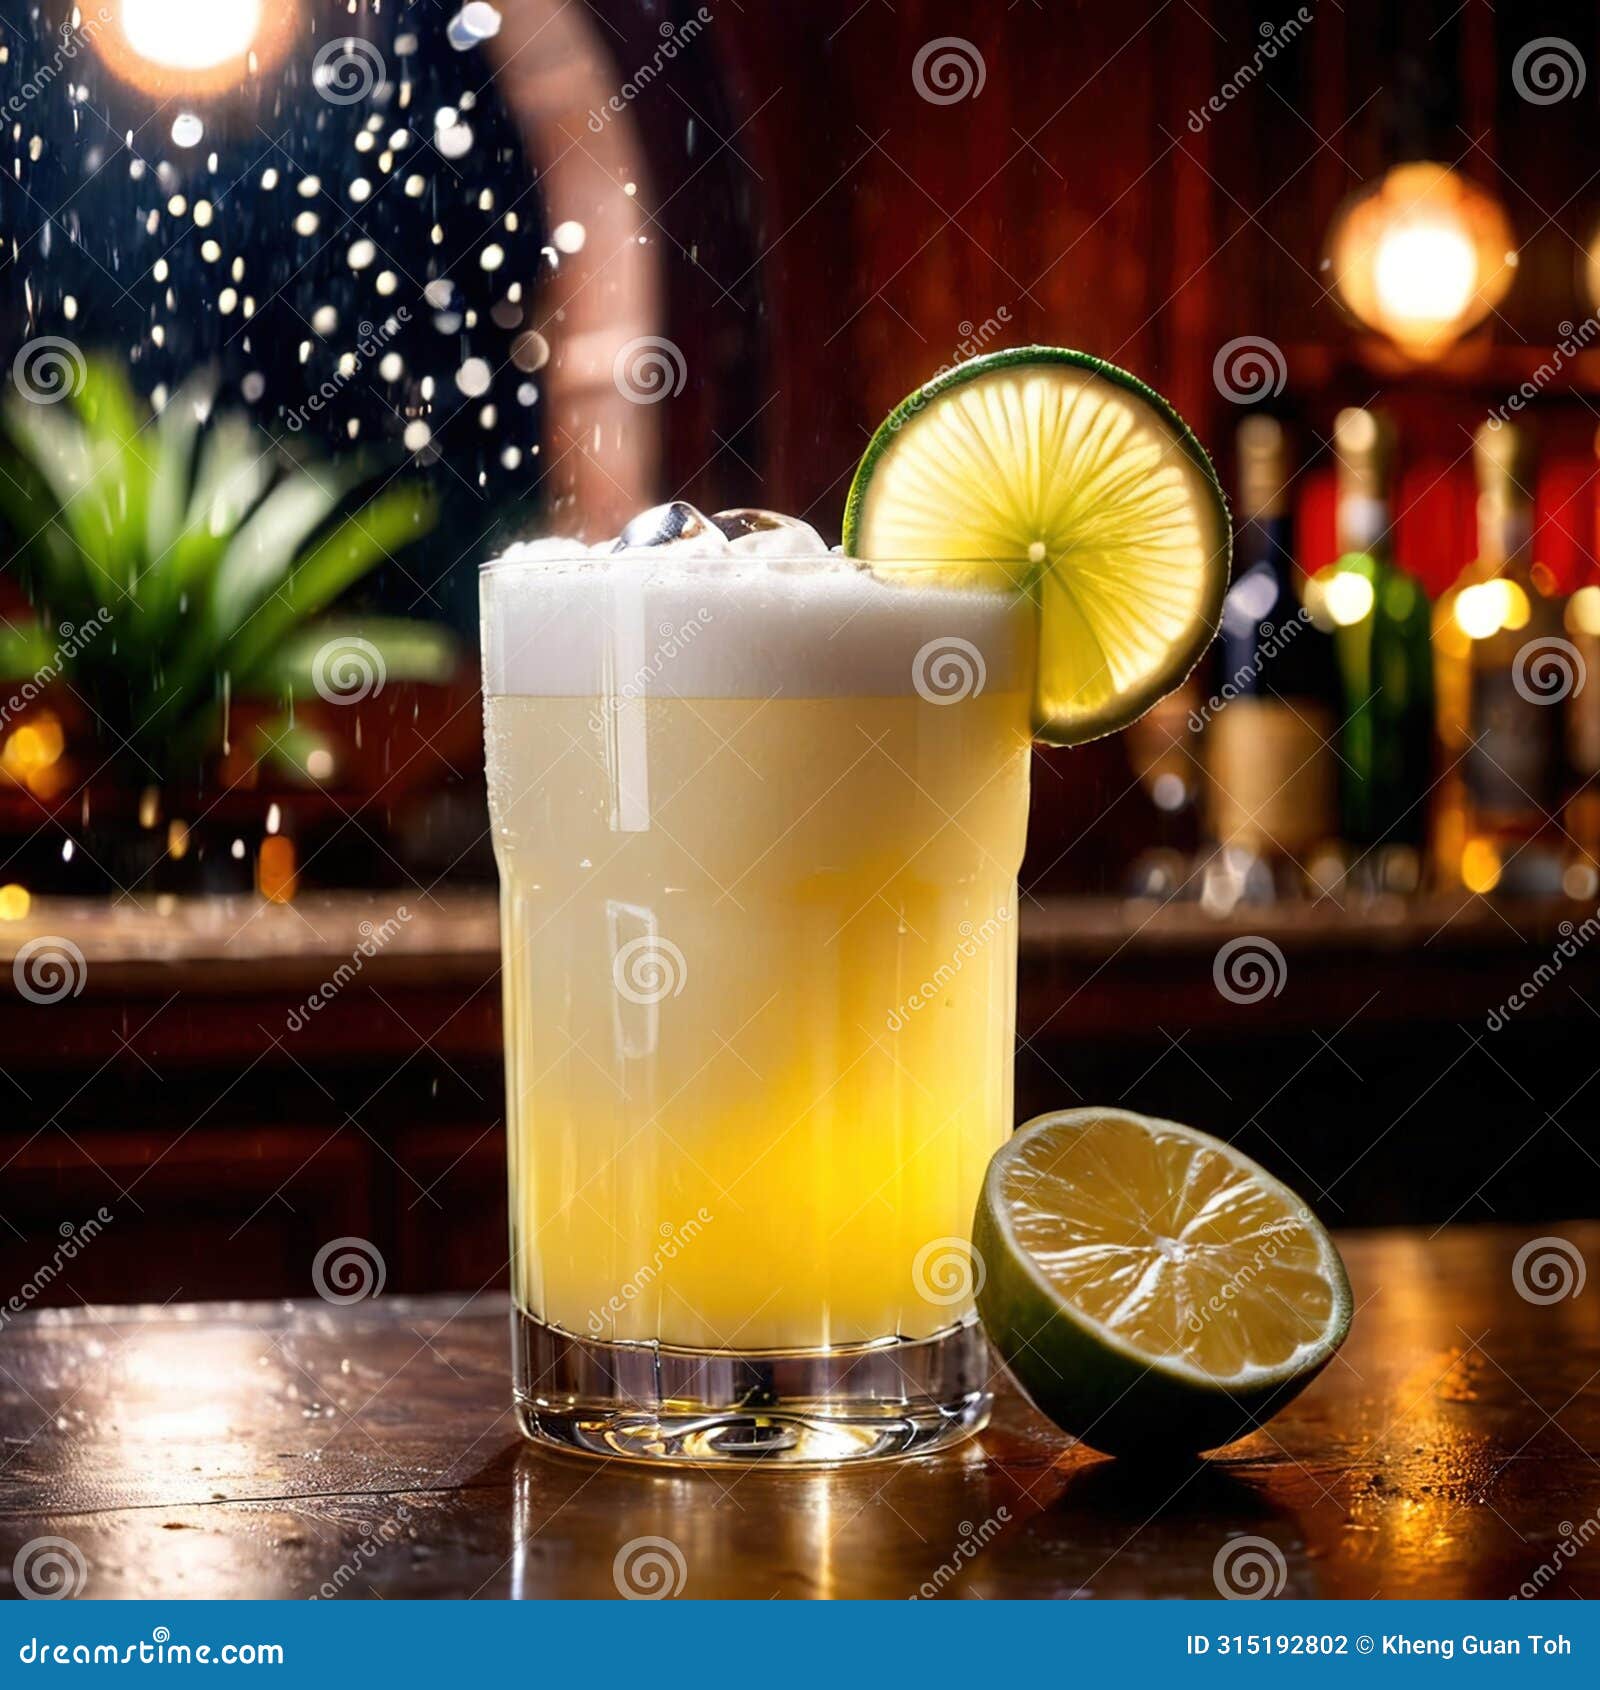 pisco sour, citrus lemon cocktail liquer alcoholic liquor mixed drink in bar pub